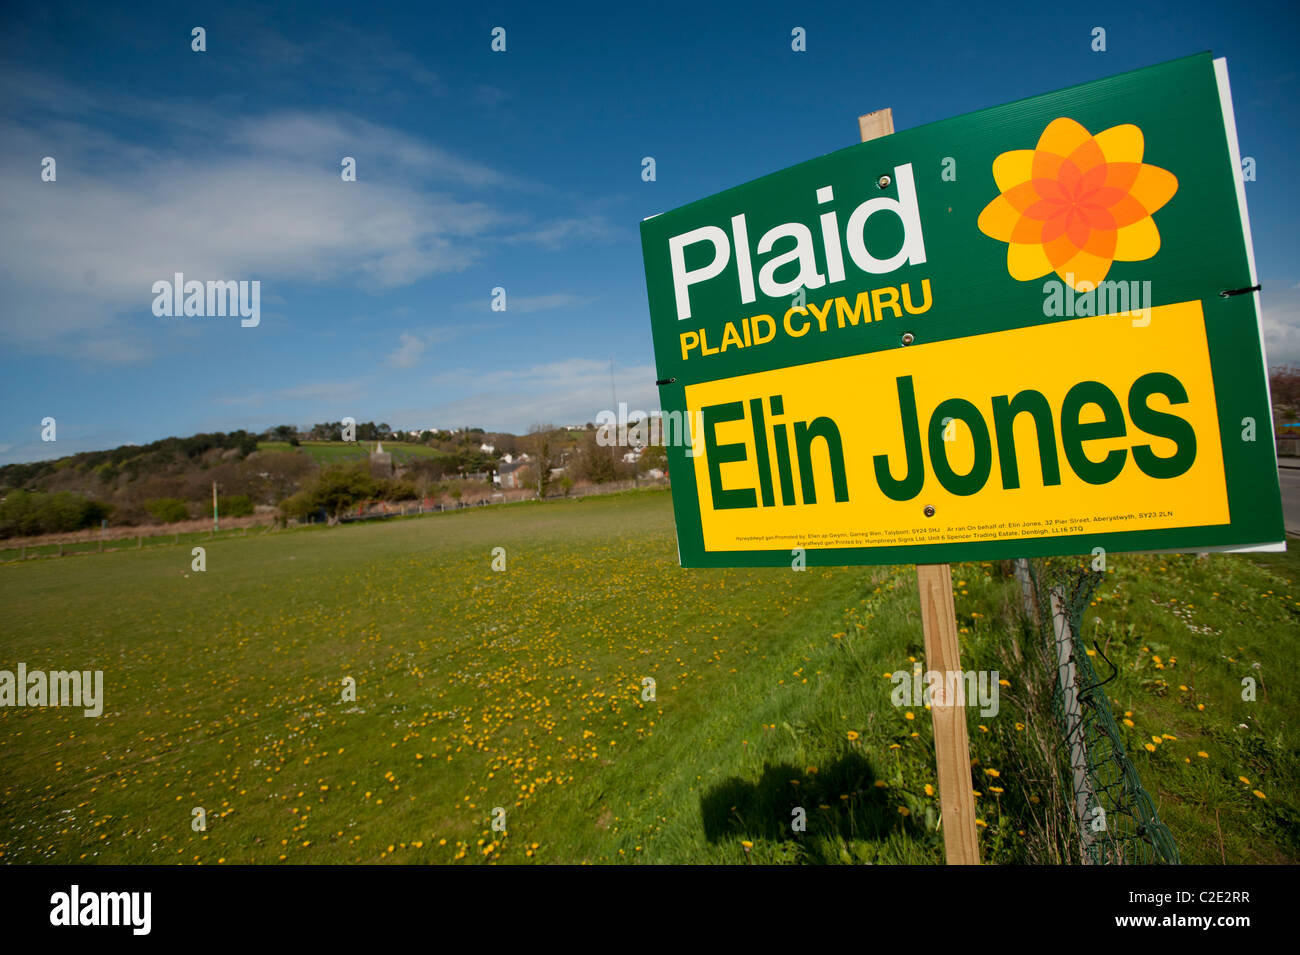 El Plaid Cymru 2011 Asamblea de Gales Gobierno banners en campaña electoral Elin JONES' Ceredigion circunscripción, UK Foto de stock